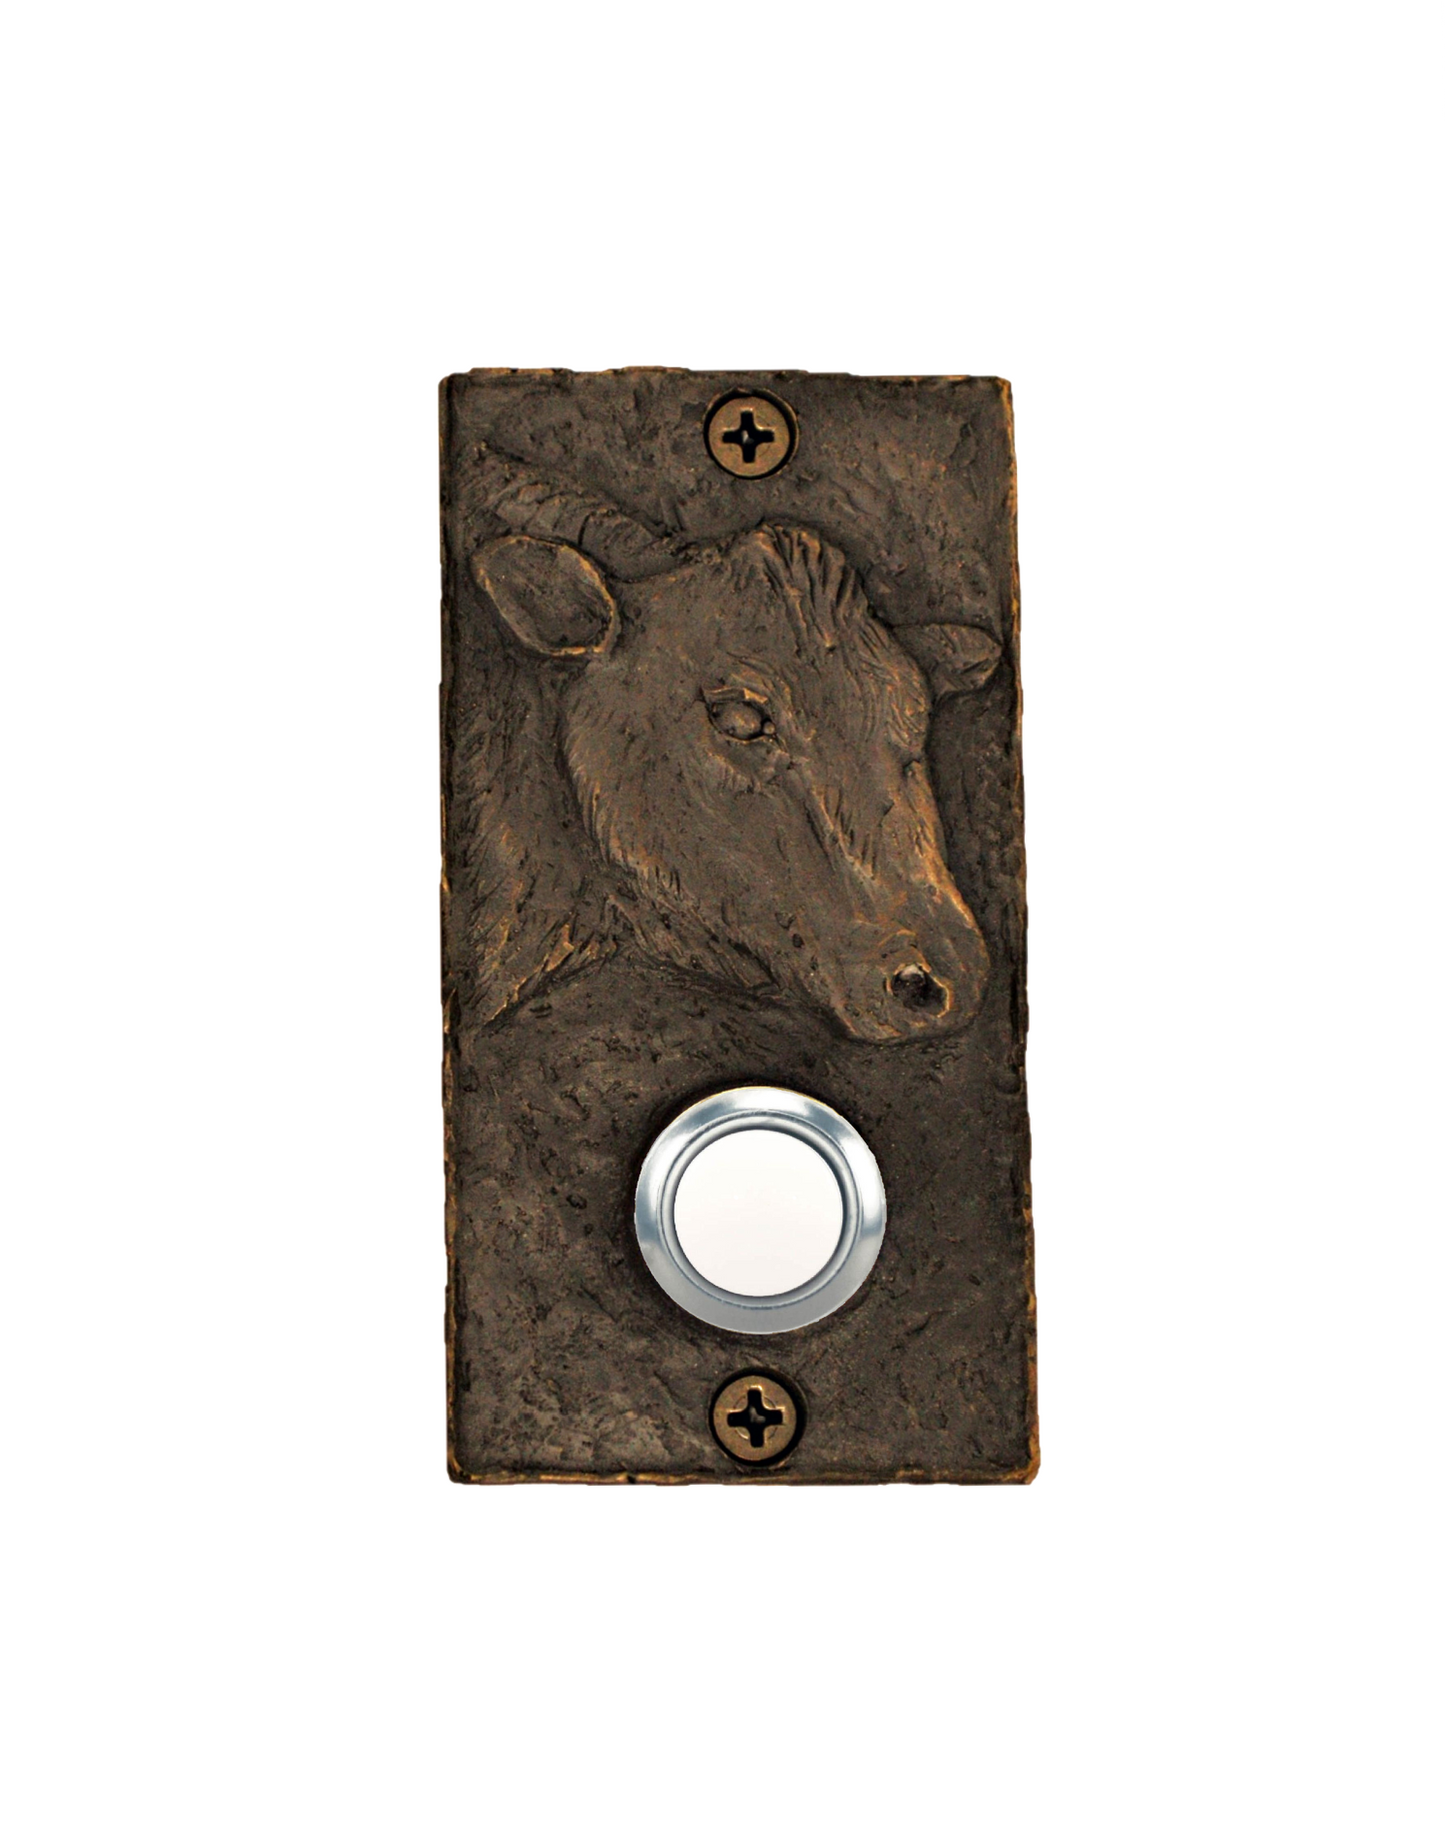 Rectangular Bronze Cow Doorbell